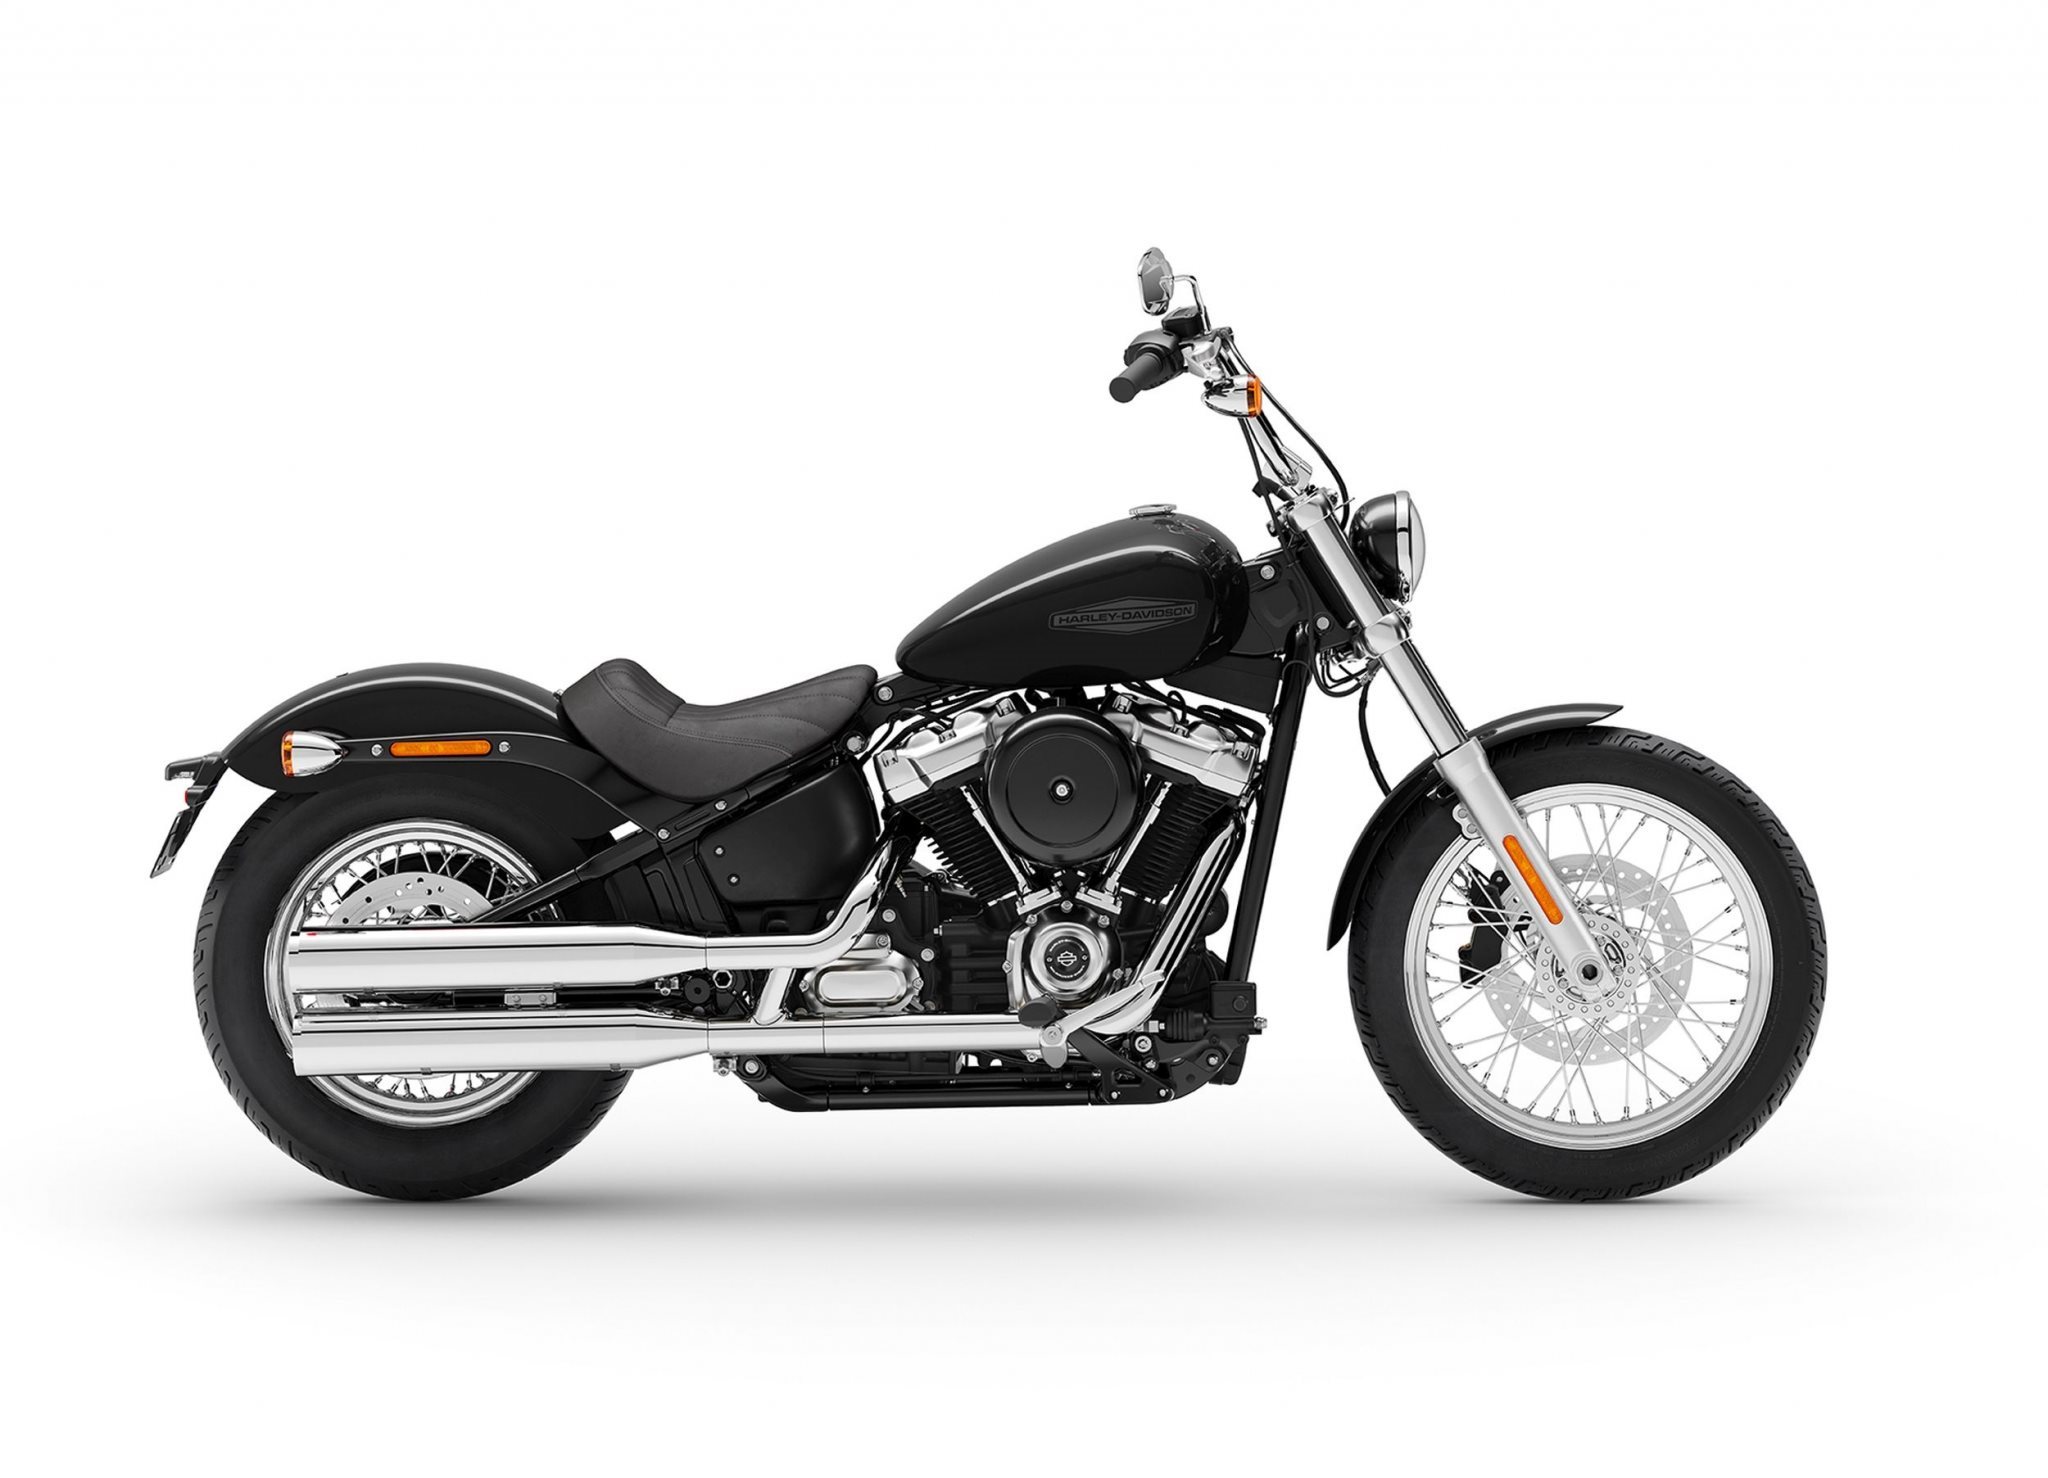 Motorrad Vergleich Harley Davidson Softail Standard Fxst 2021 Vs Indian Chief Bobber Dark Horse 2021